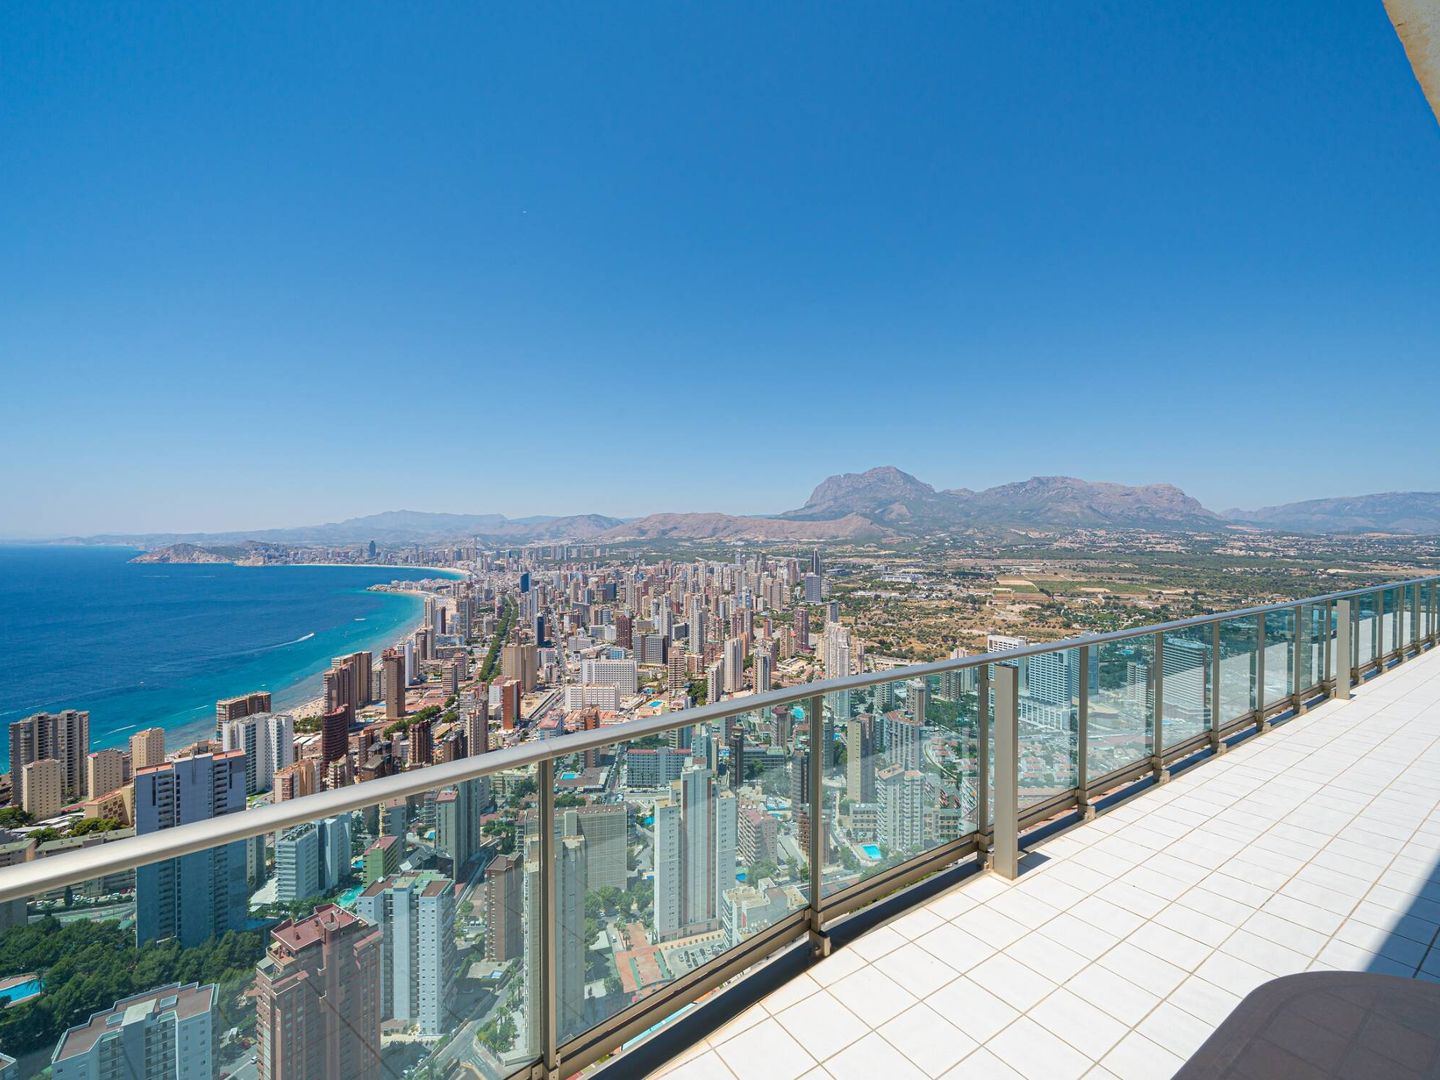 Vista desde el ático de Torre Lúgano, a la venta por casi 900.000 euros. (Engel & Völkers)